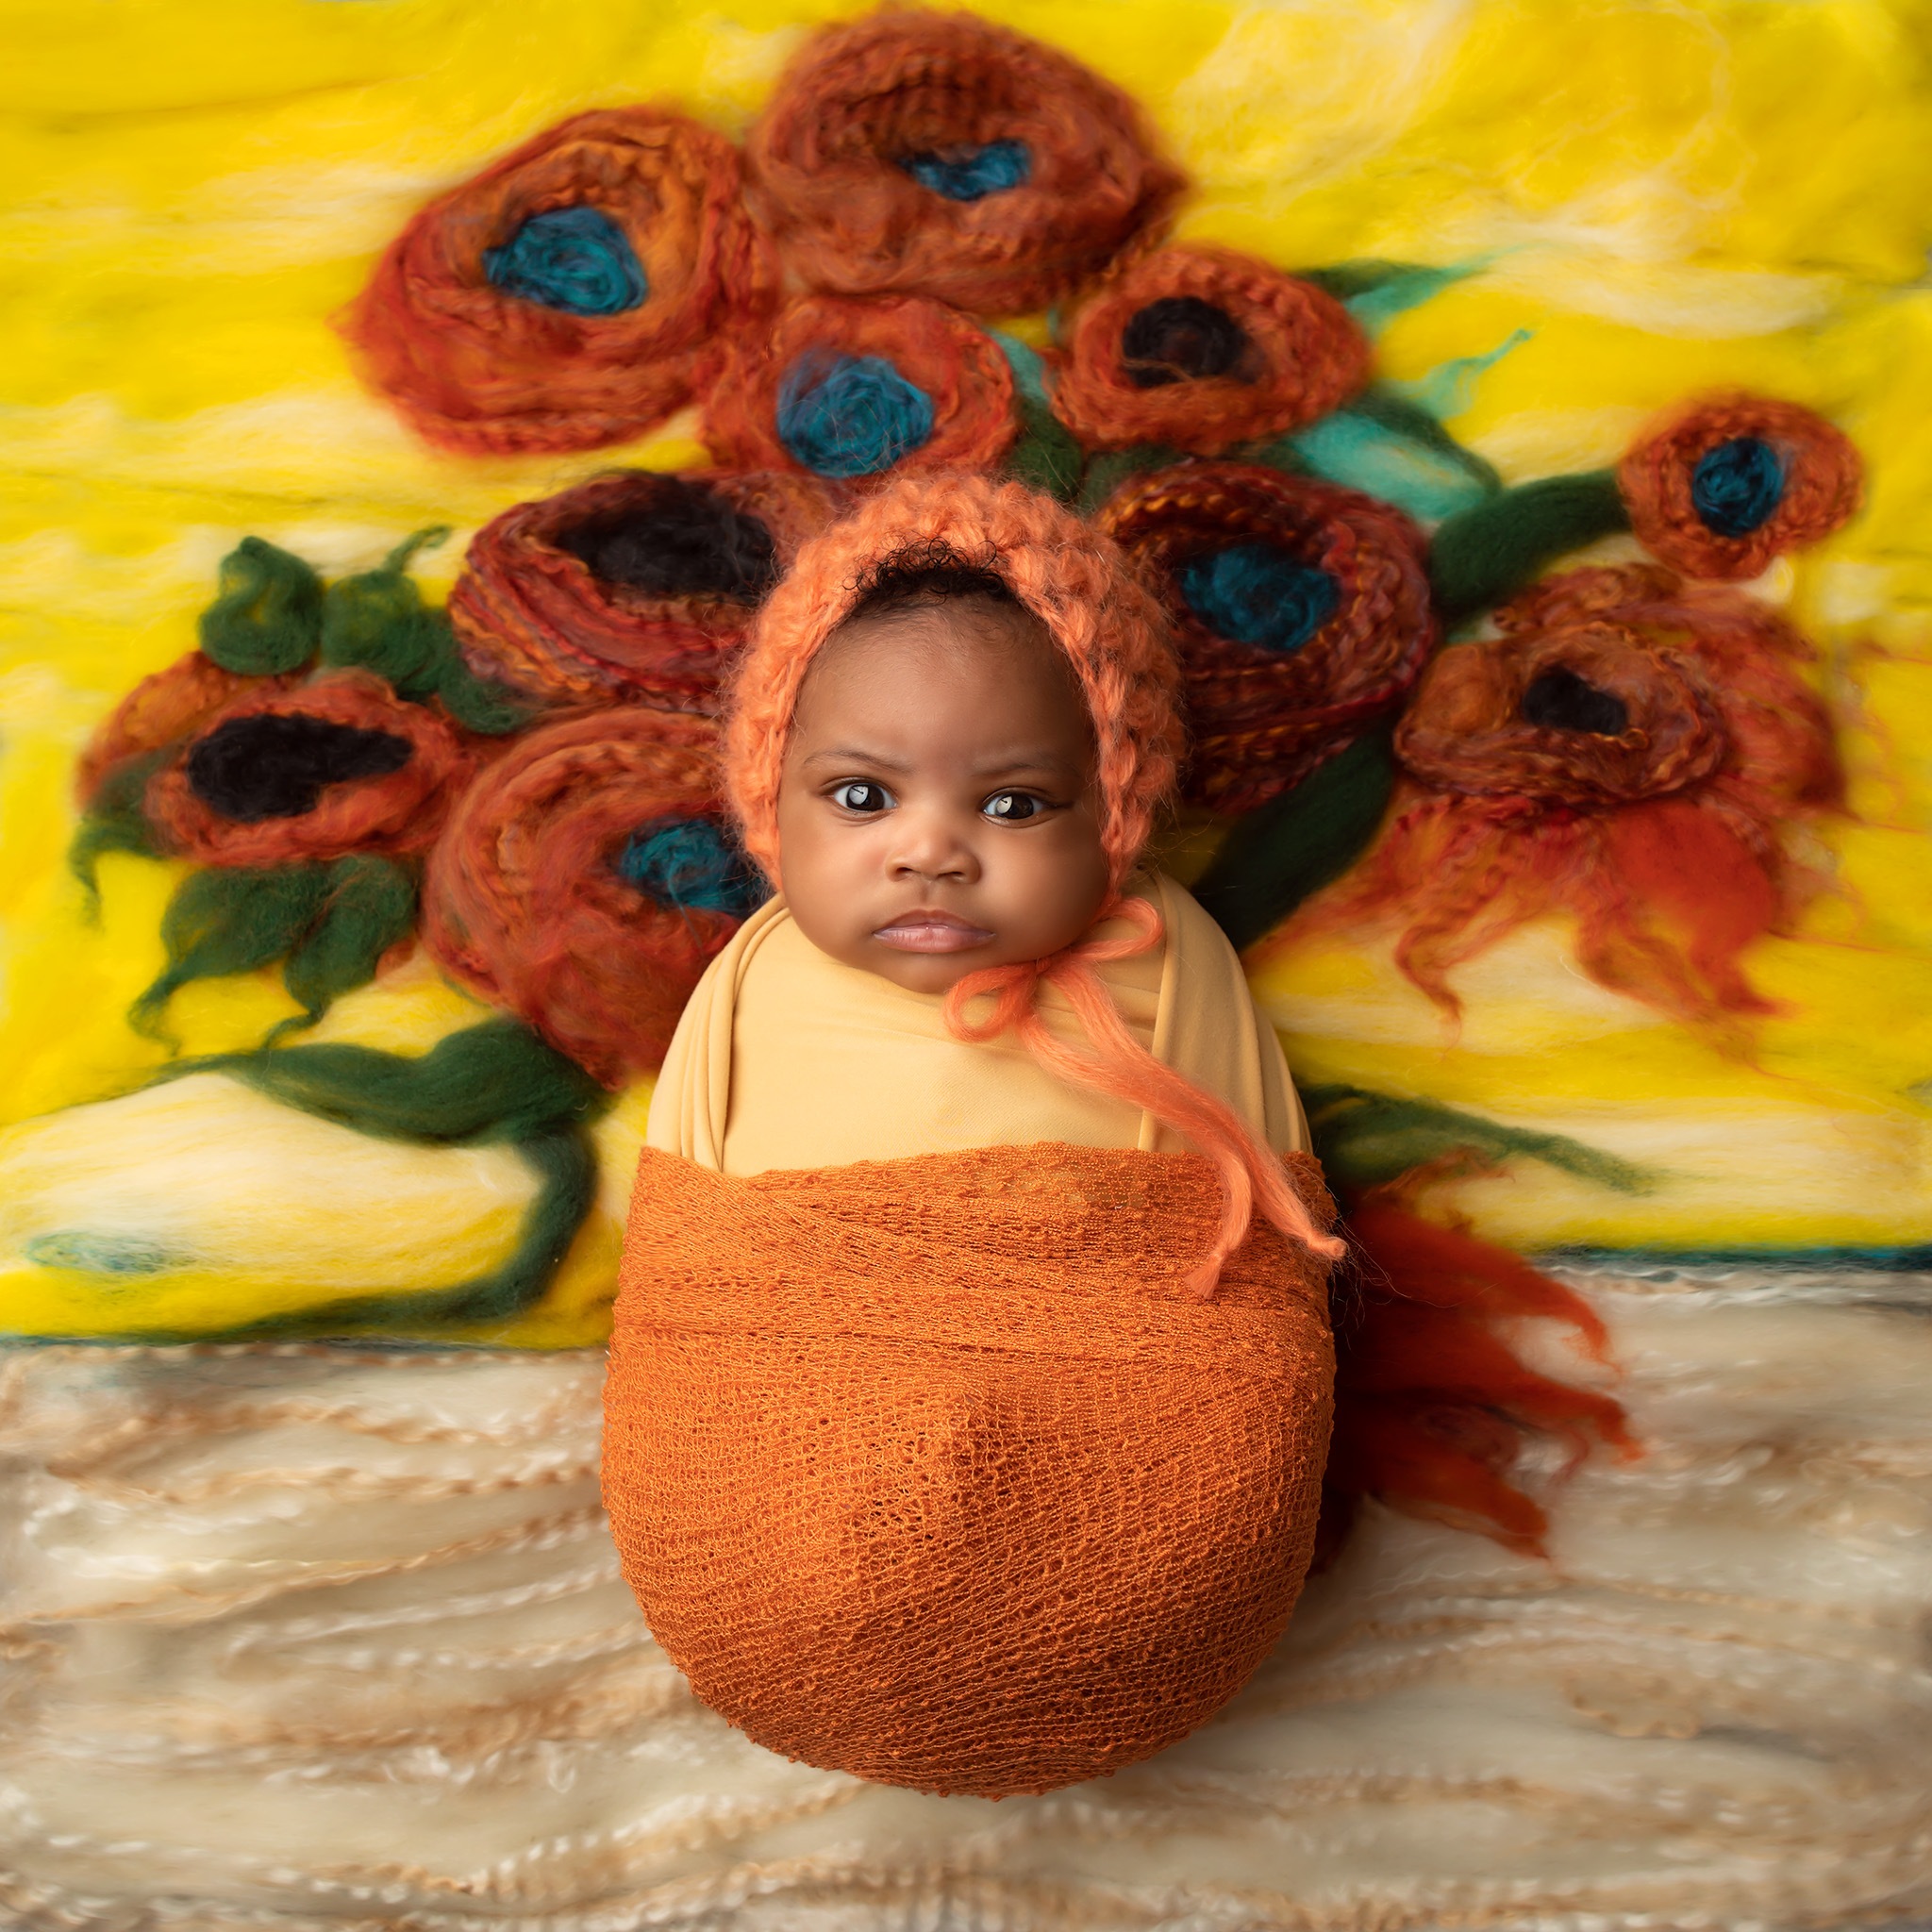 Van Gogh sunflowers inspired newborn photos